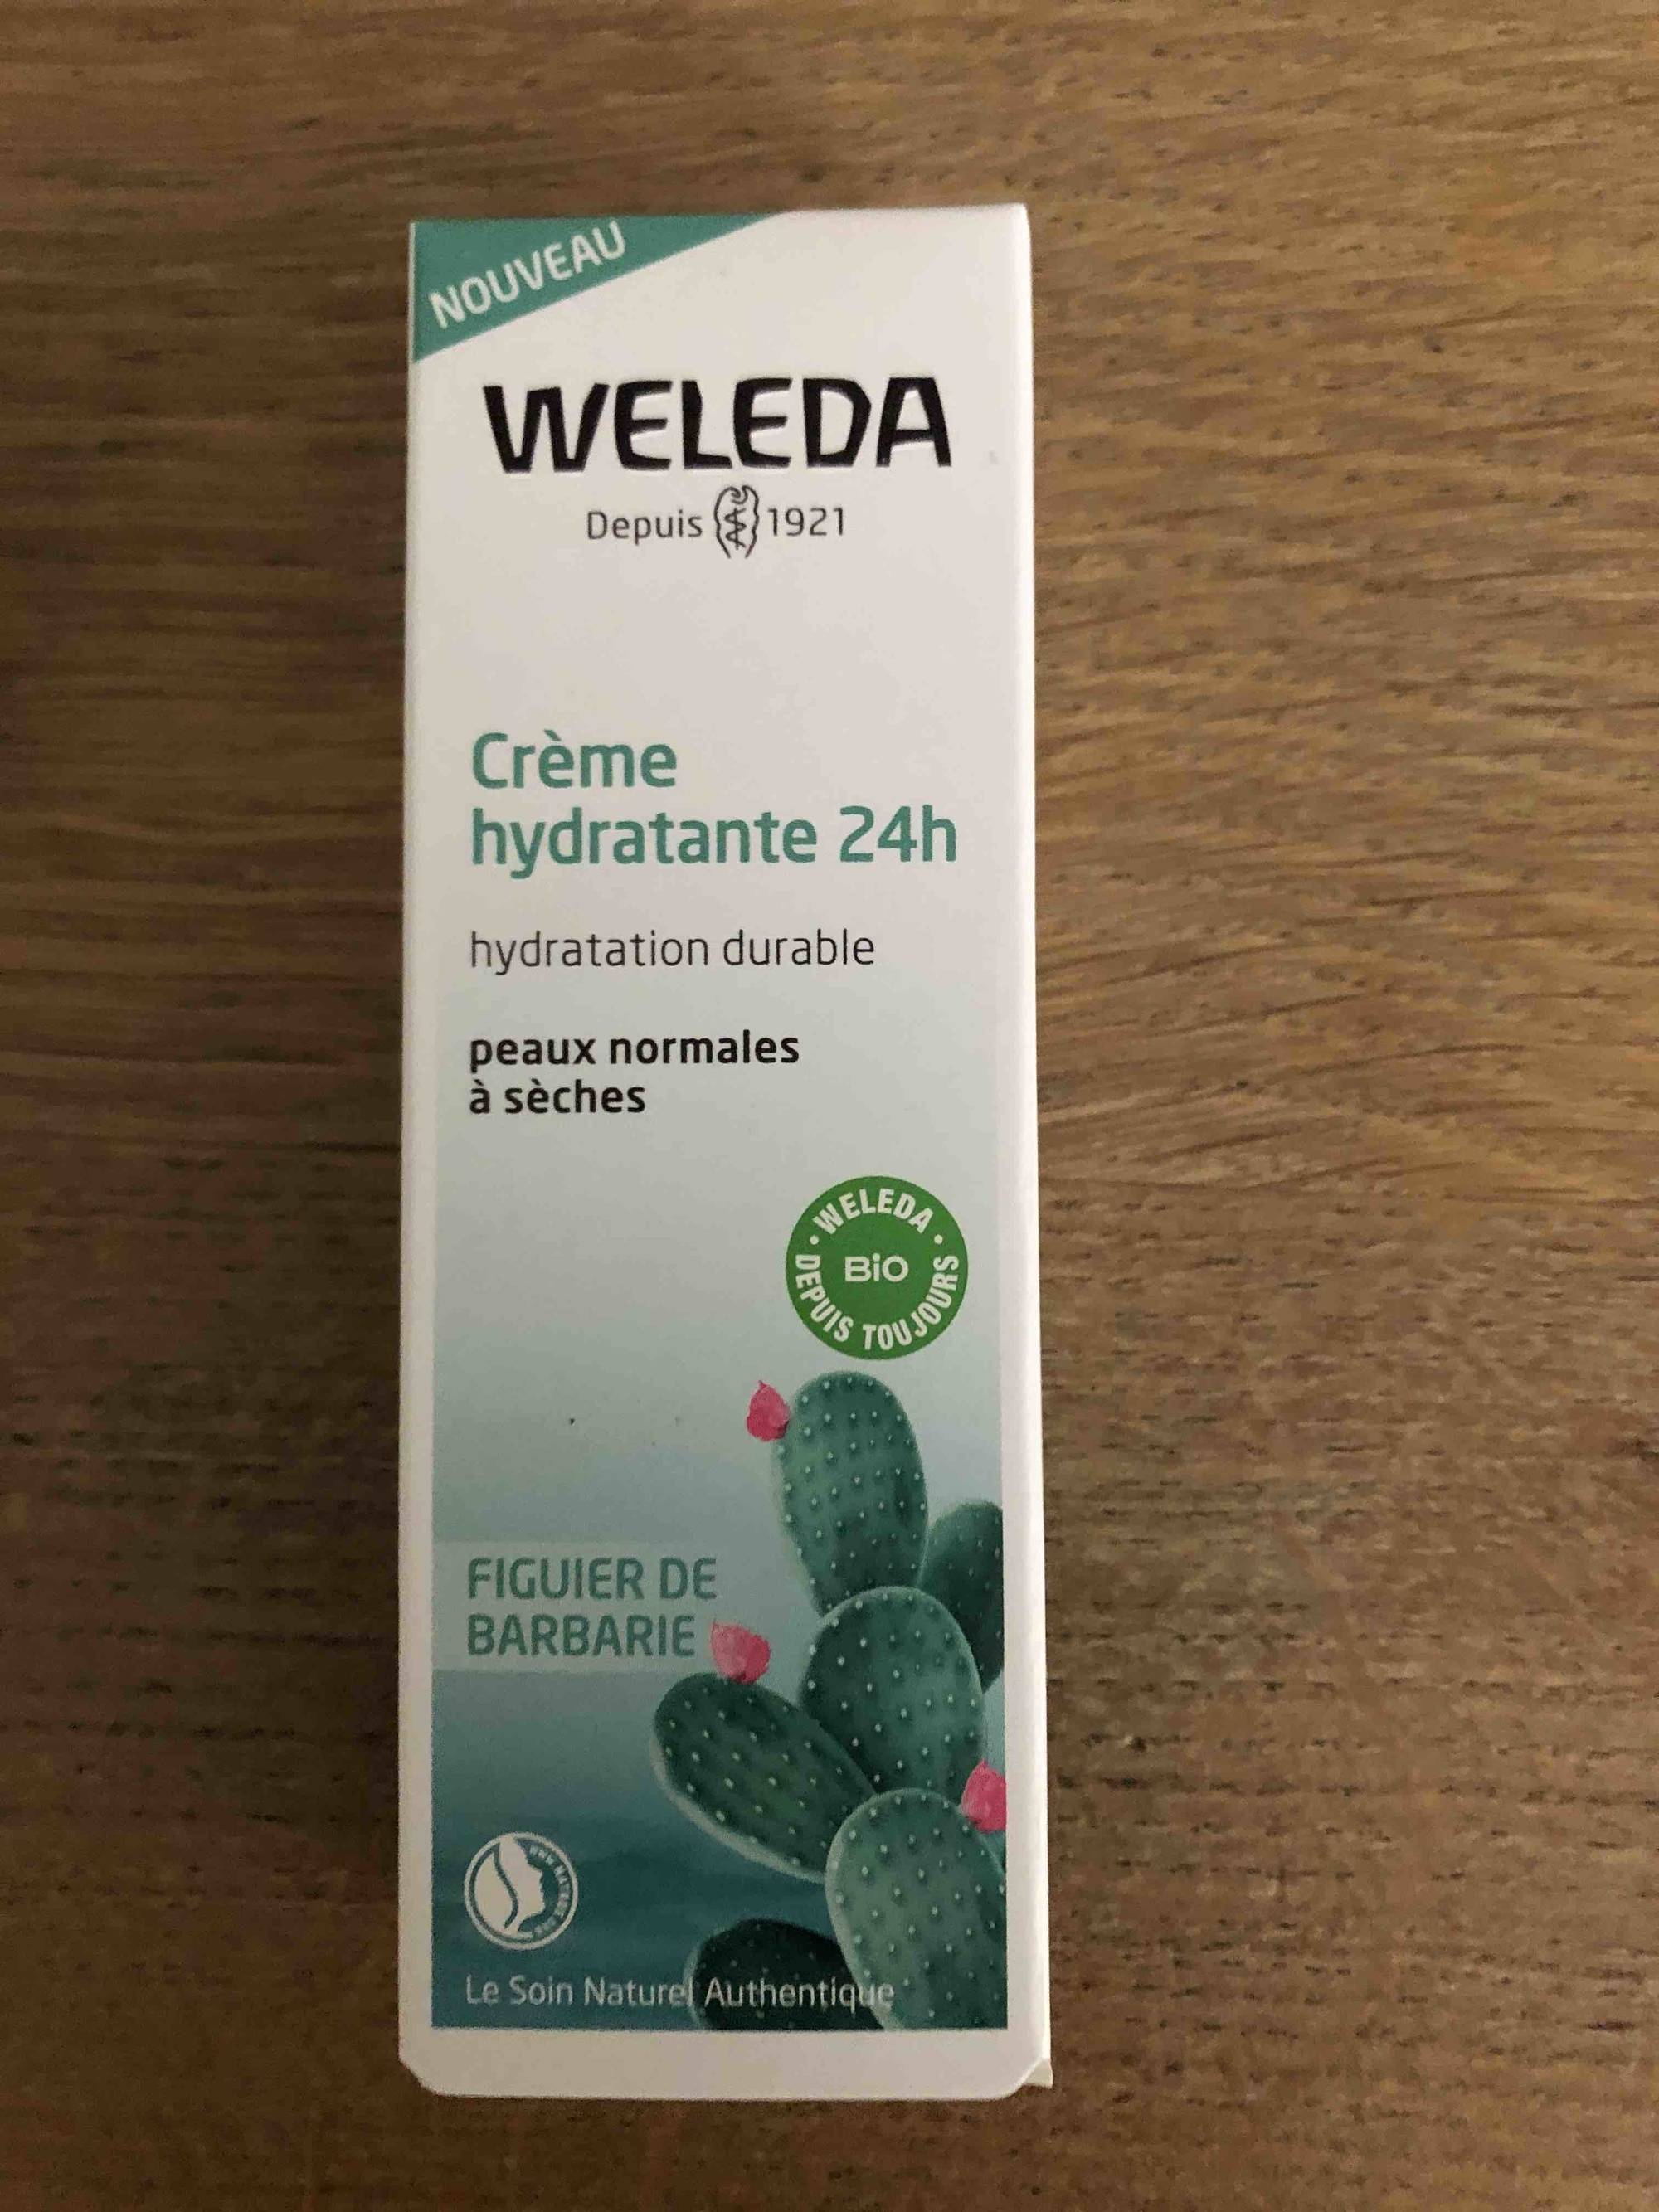 WELEDA - Fuguier de barbarie - Crème hydratante 24h 